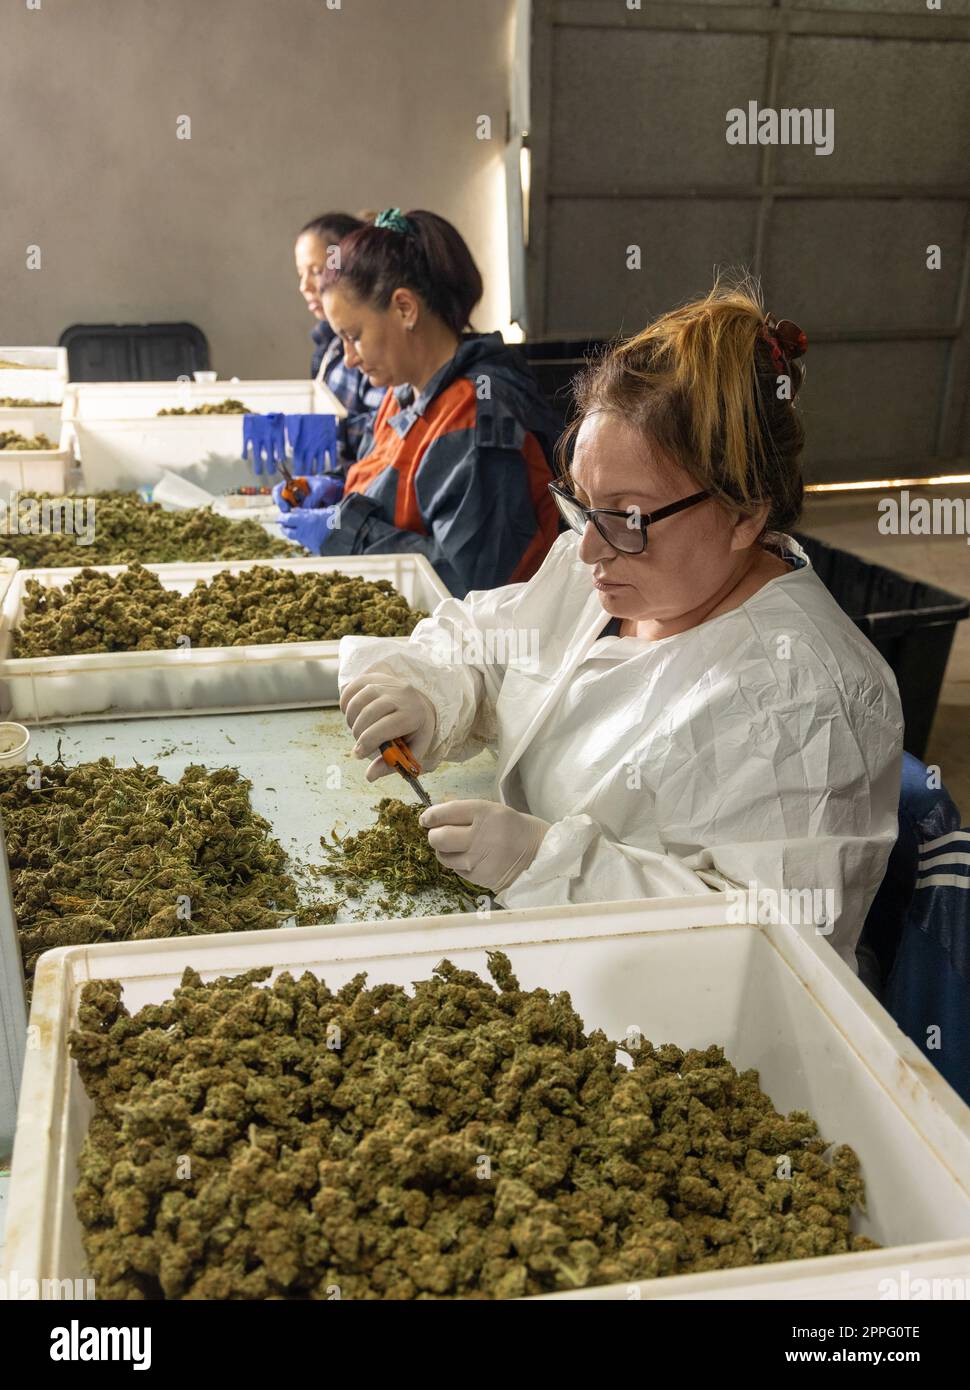 Femaleâ operai in guanti che rifiniscono con forbici foglie di marijuana da cime secche Foto Stock